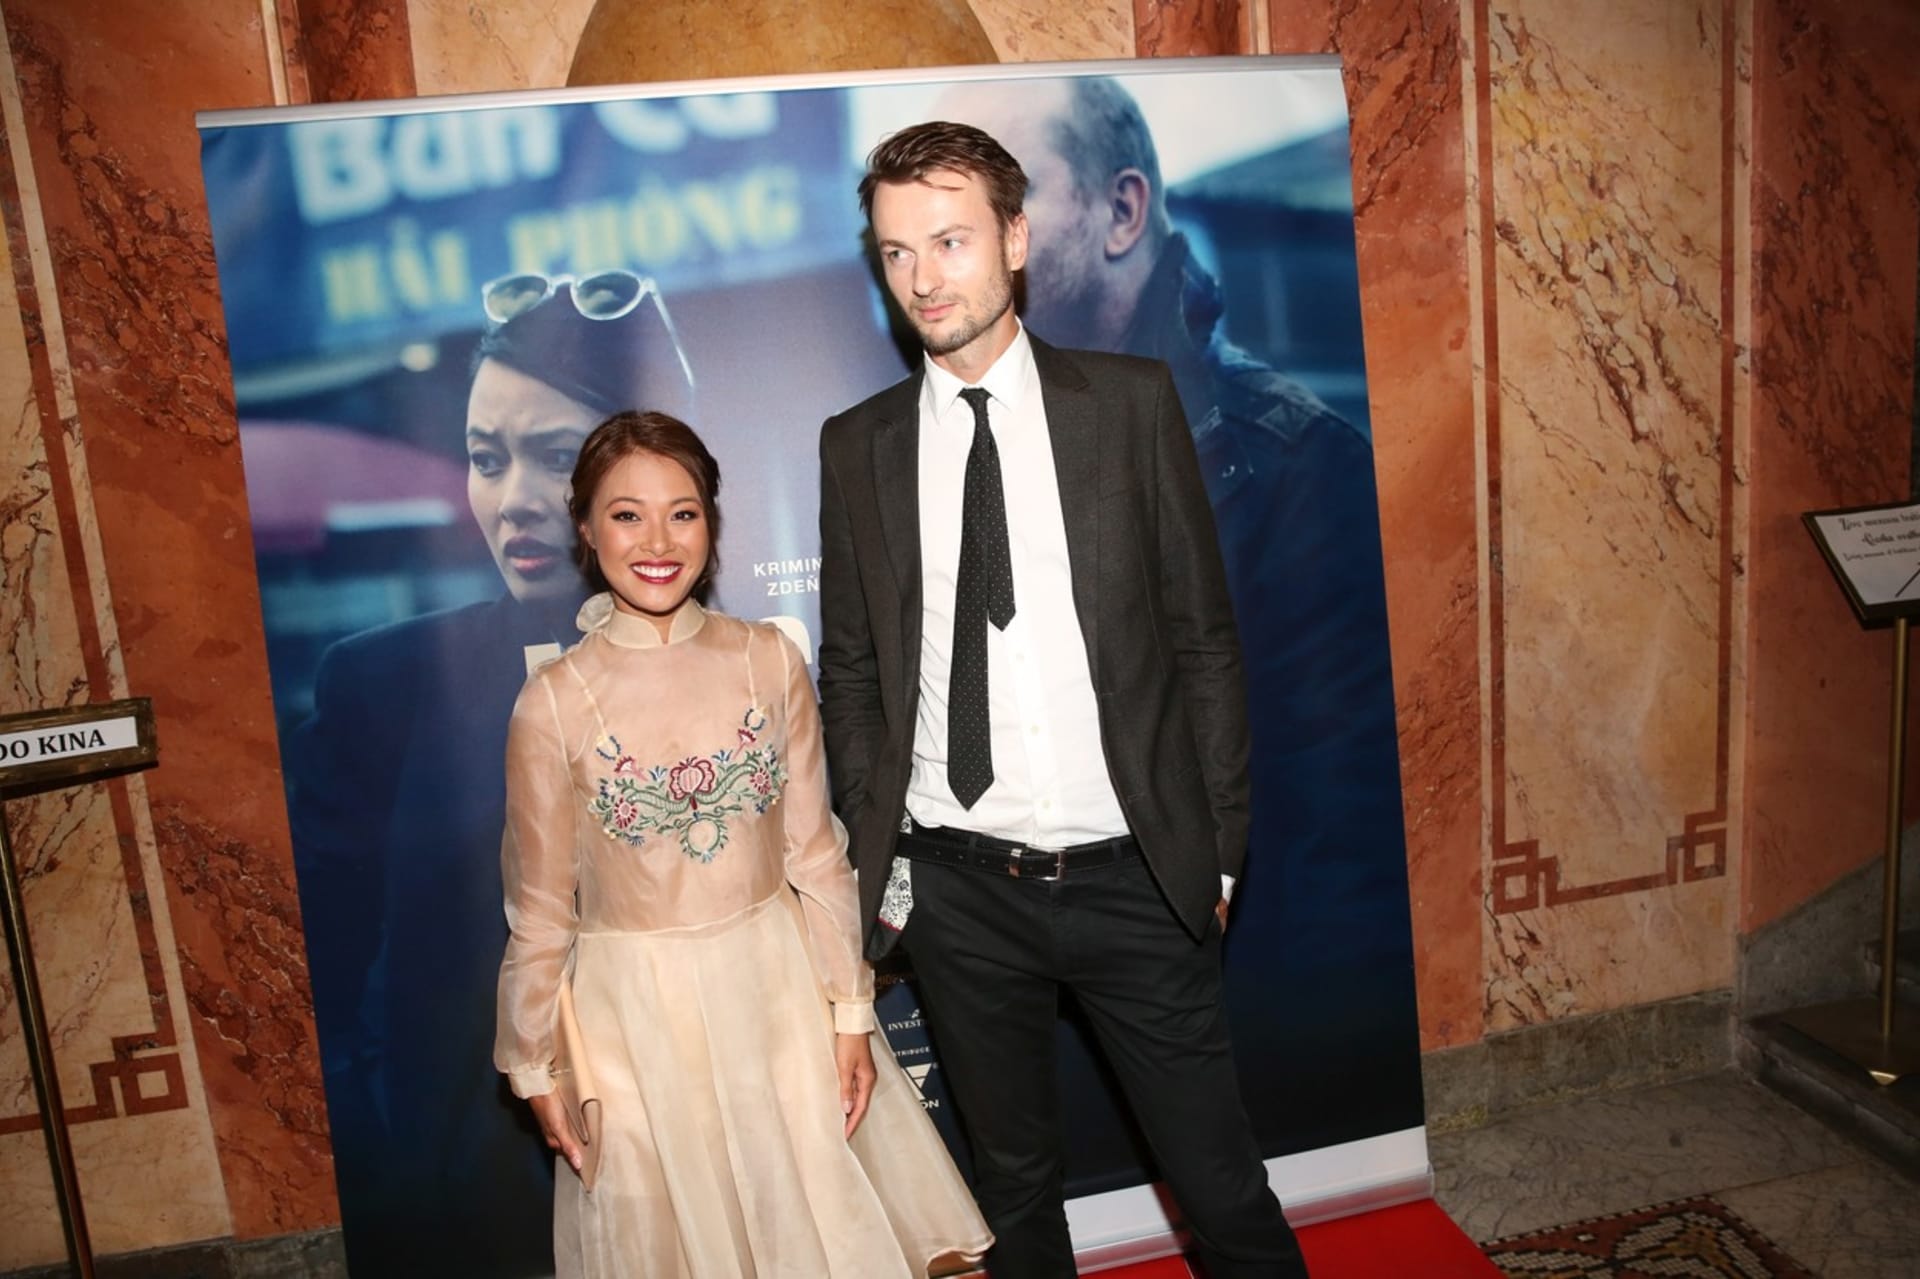 Herečka Špetlíková s exmanželem Martinem Špetlíkem na premiéře filmu Miss Hanoi v roce 2018